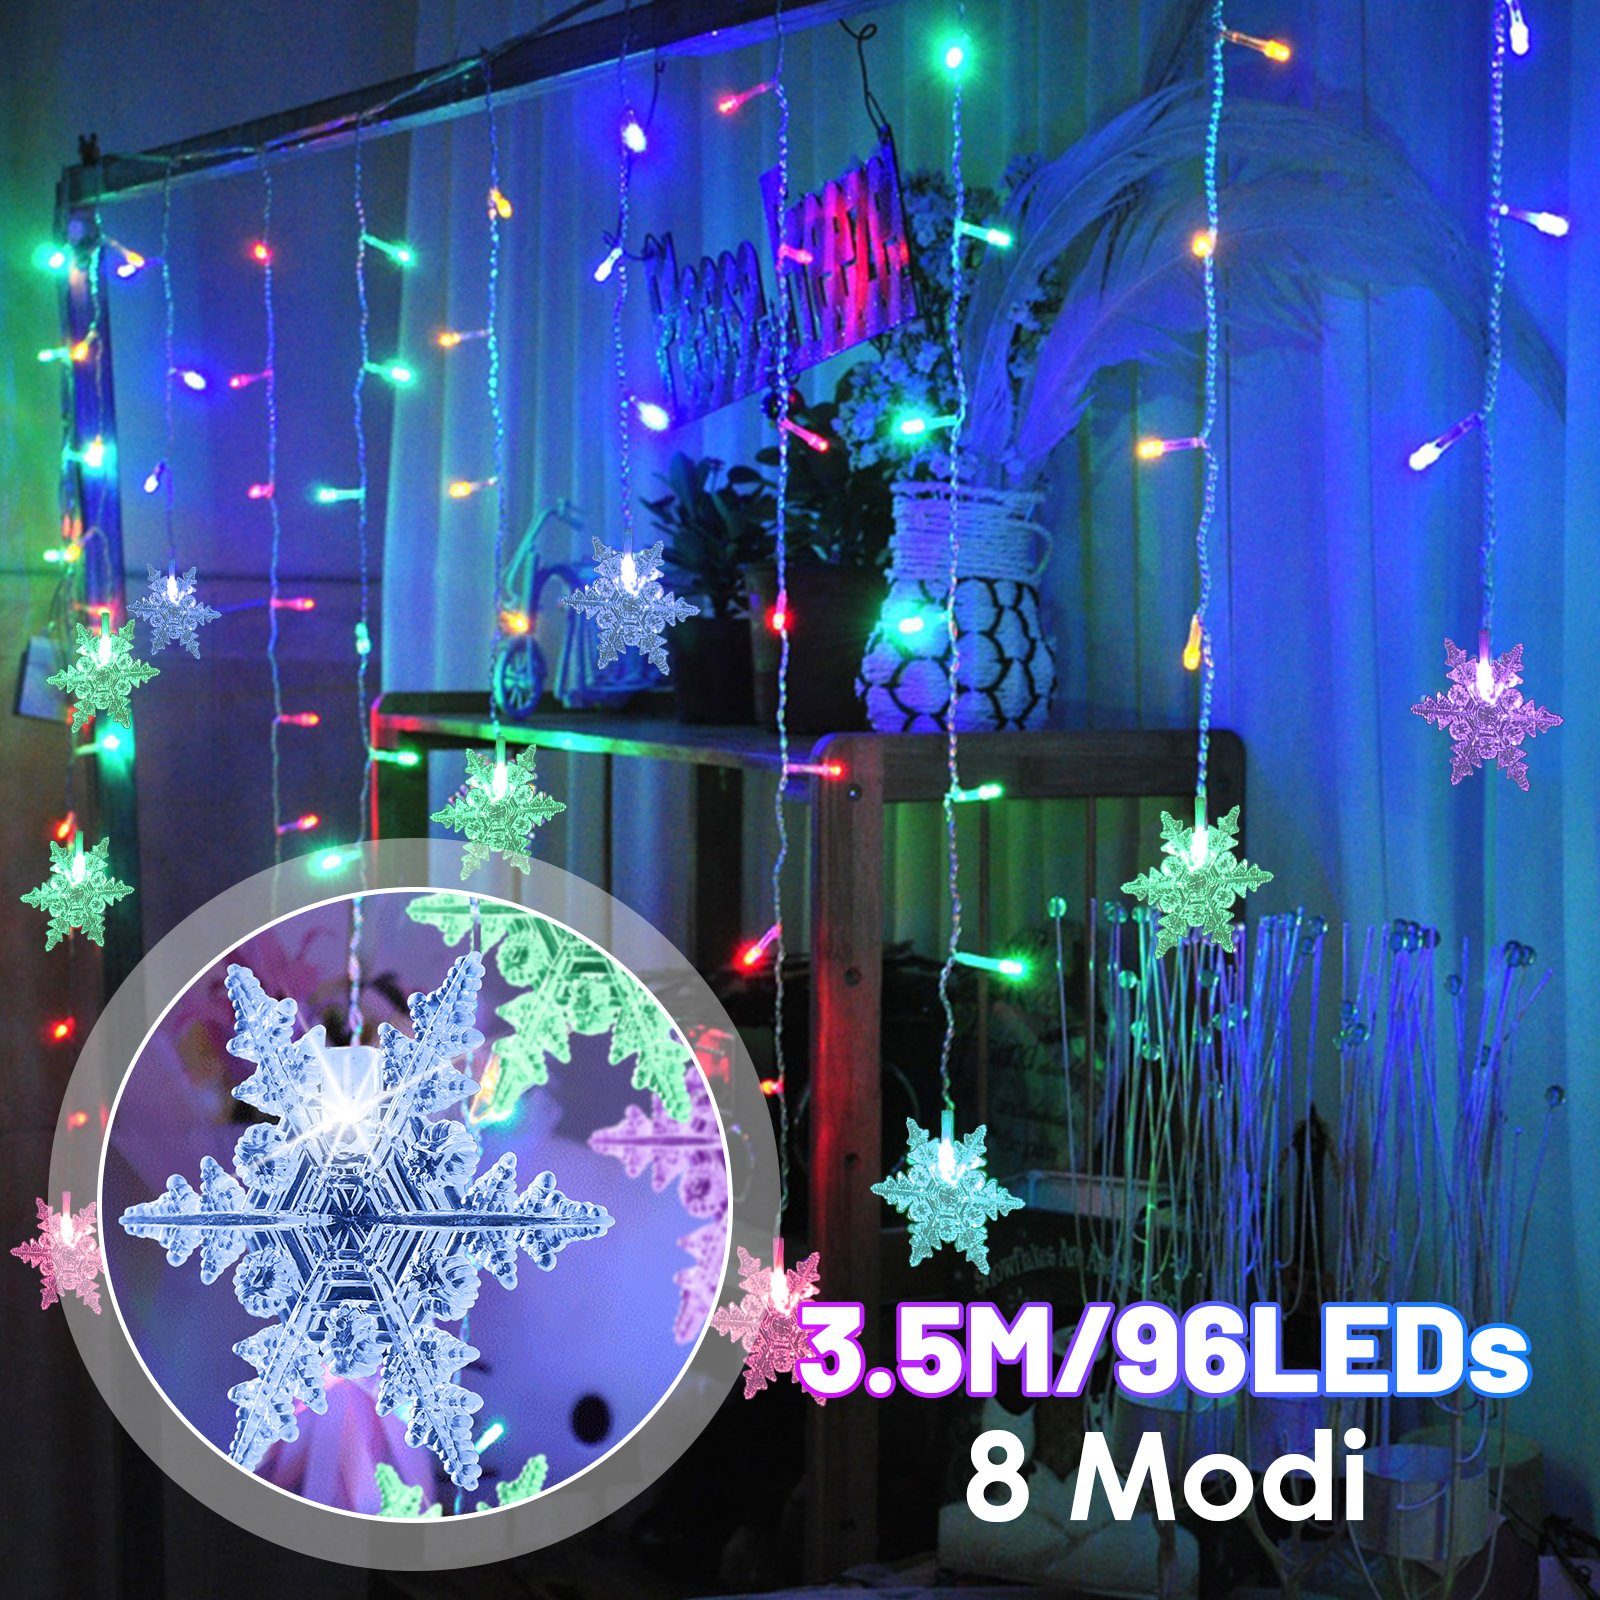 Clanmacy LED-Lichtervorhang WeihnachtenBeleuchtung, Mehrfarbig Partydekoration, Innenbeleuchtung Bunt LED Lichterkette Wasserfest Weihnachten, Lichterkette Vorhang für